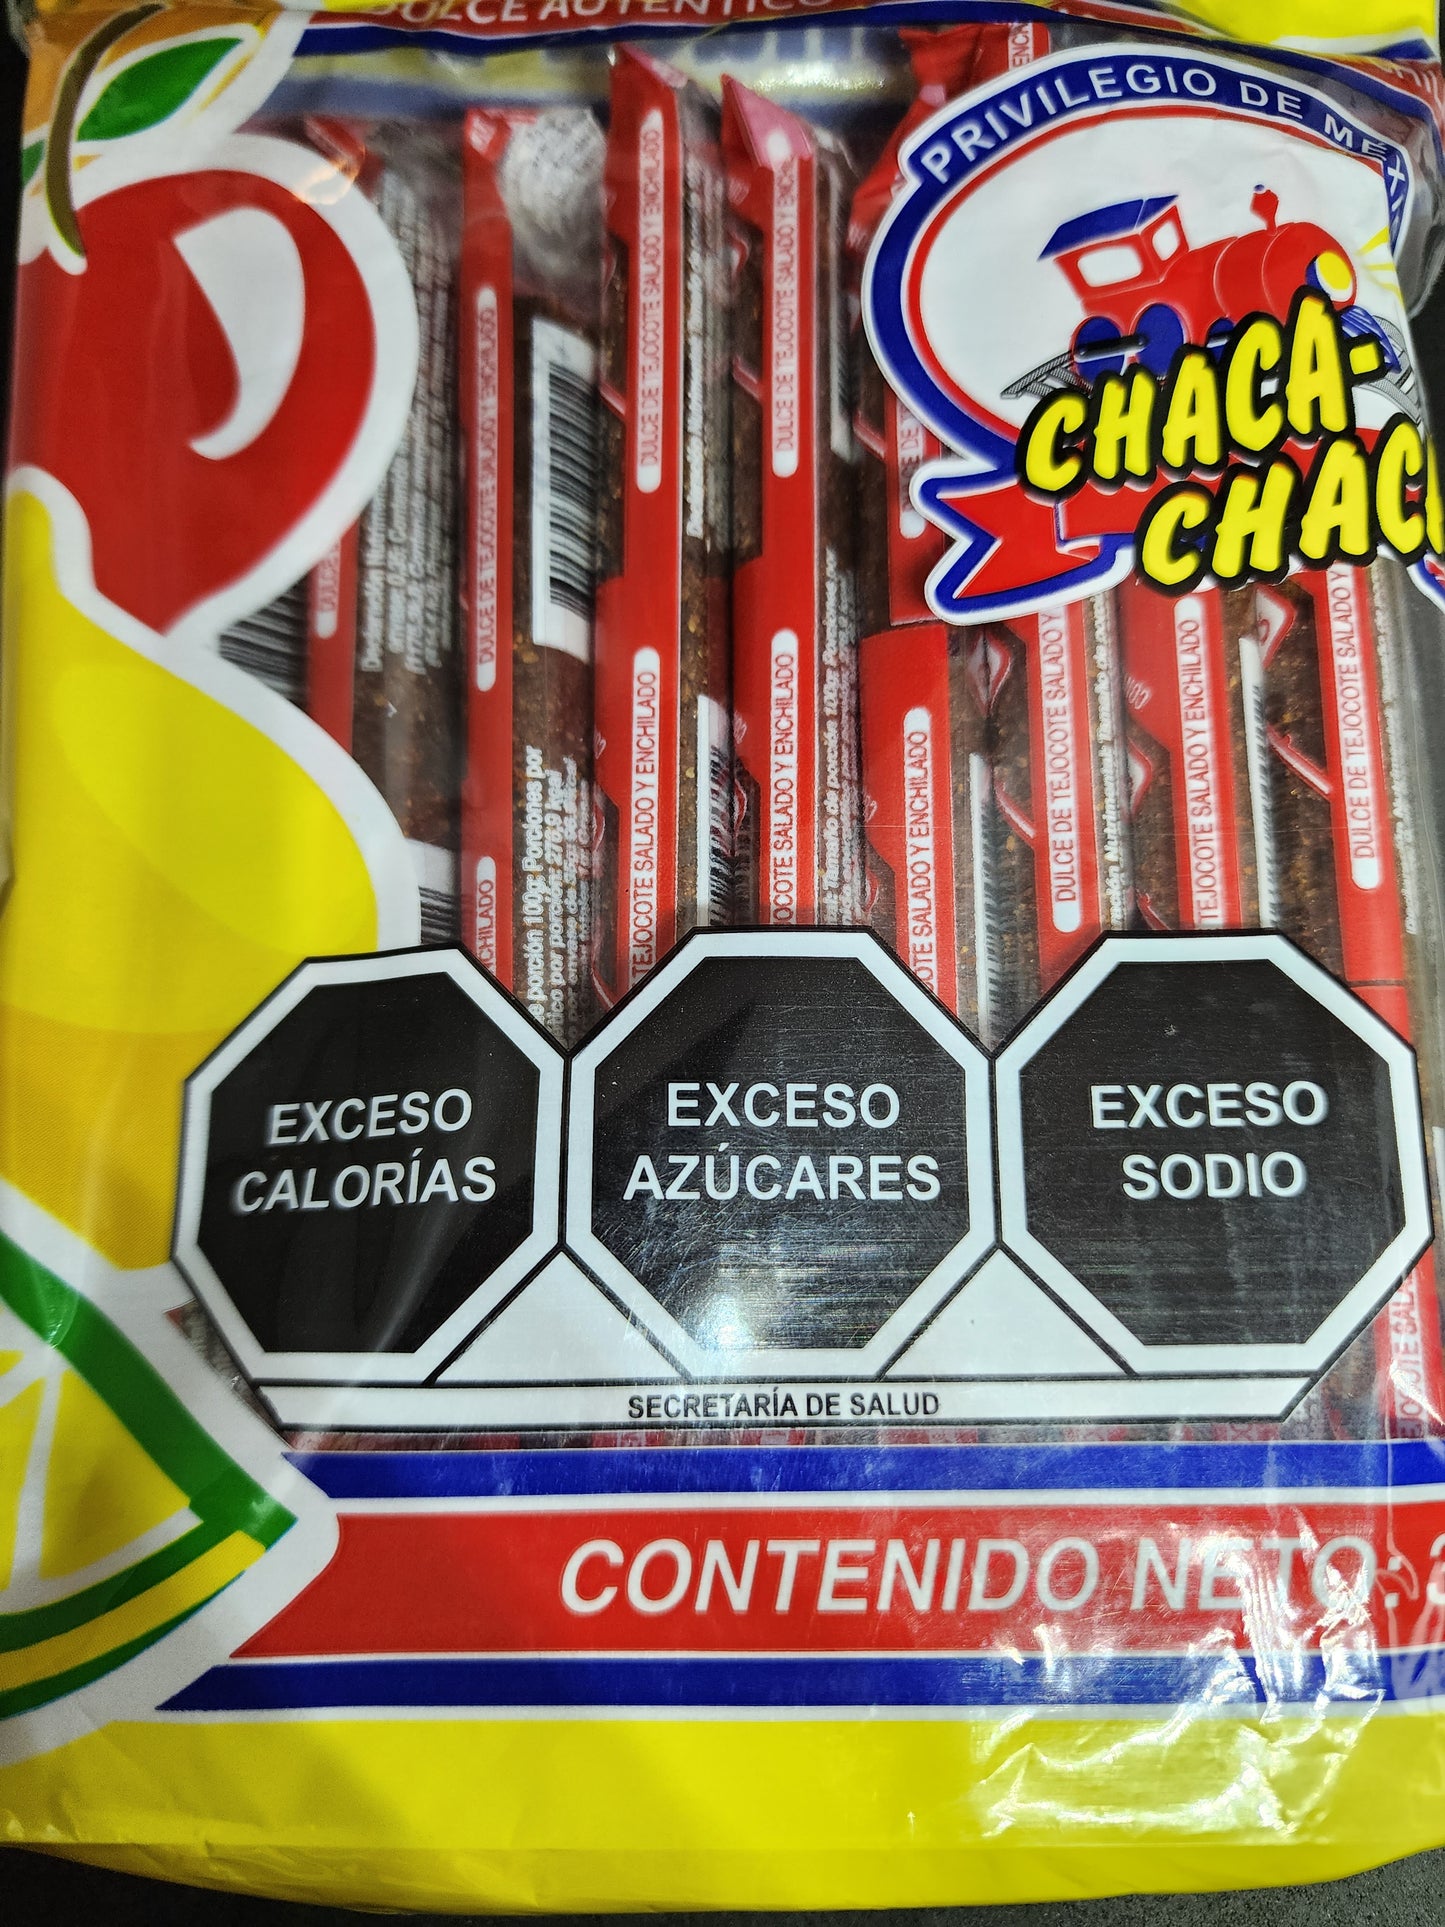 CHACA - CHACA